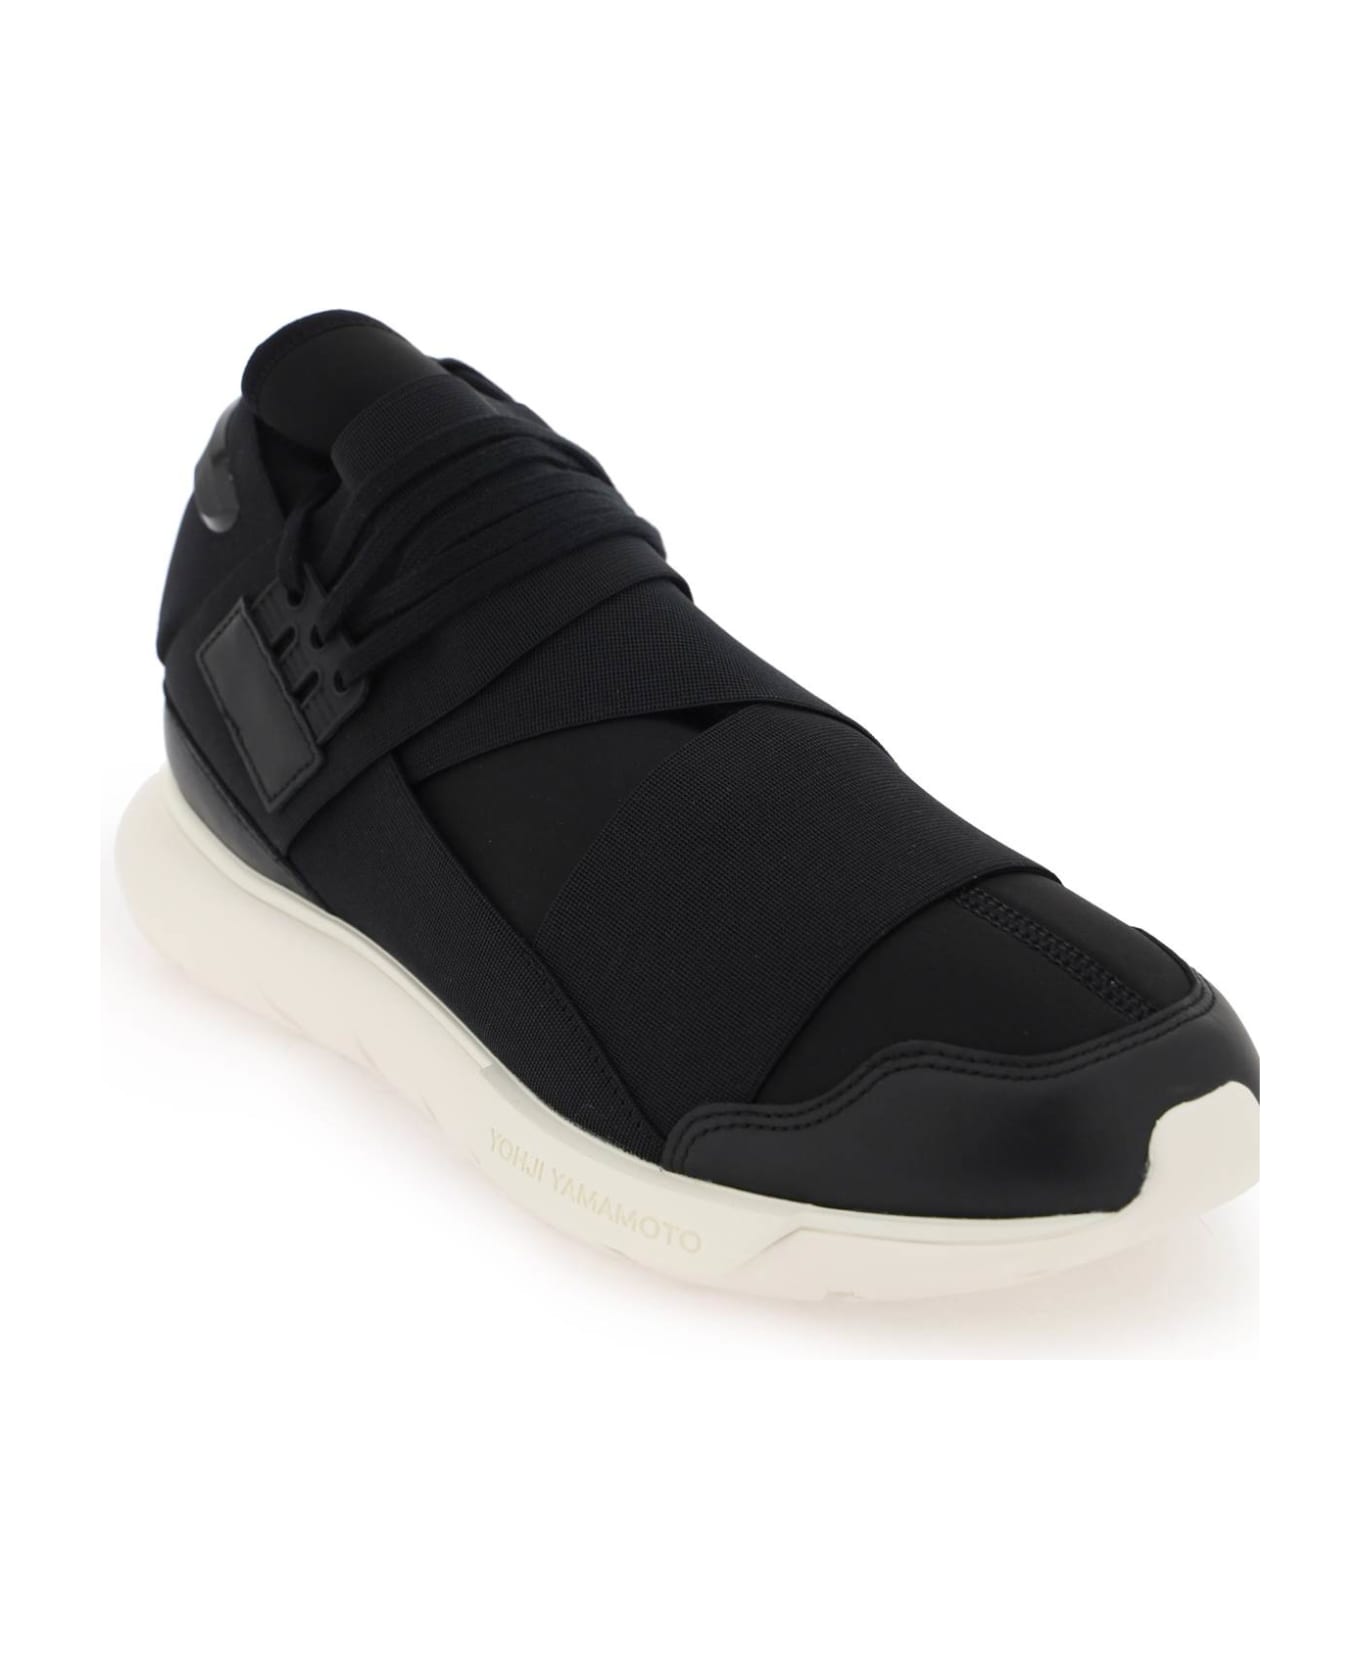 Y-3 Low Qasa Sneakers - BLACKBLACKOWHITE